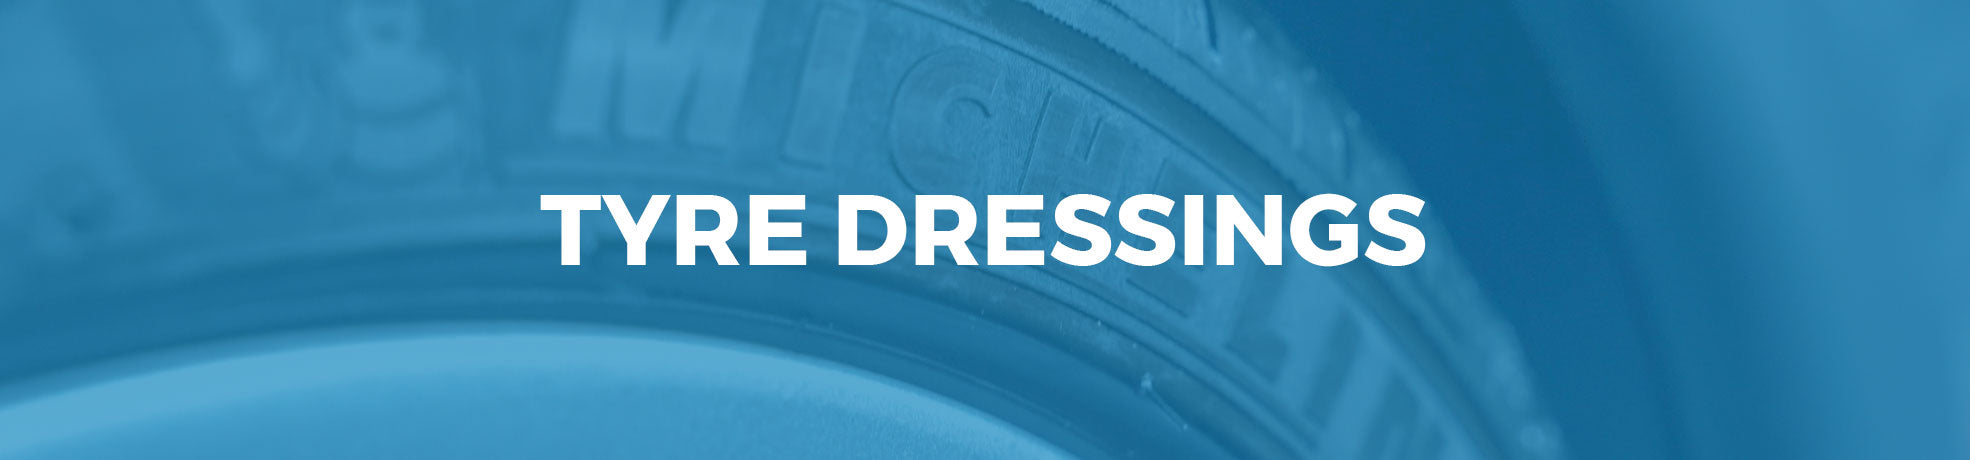 Tyre Dressings